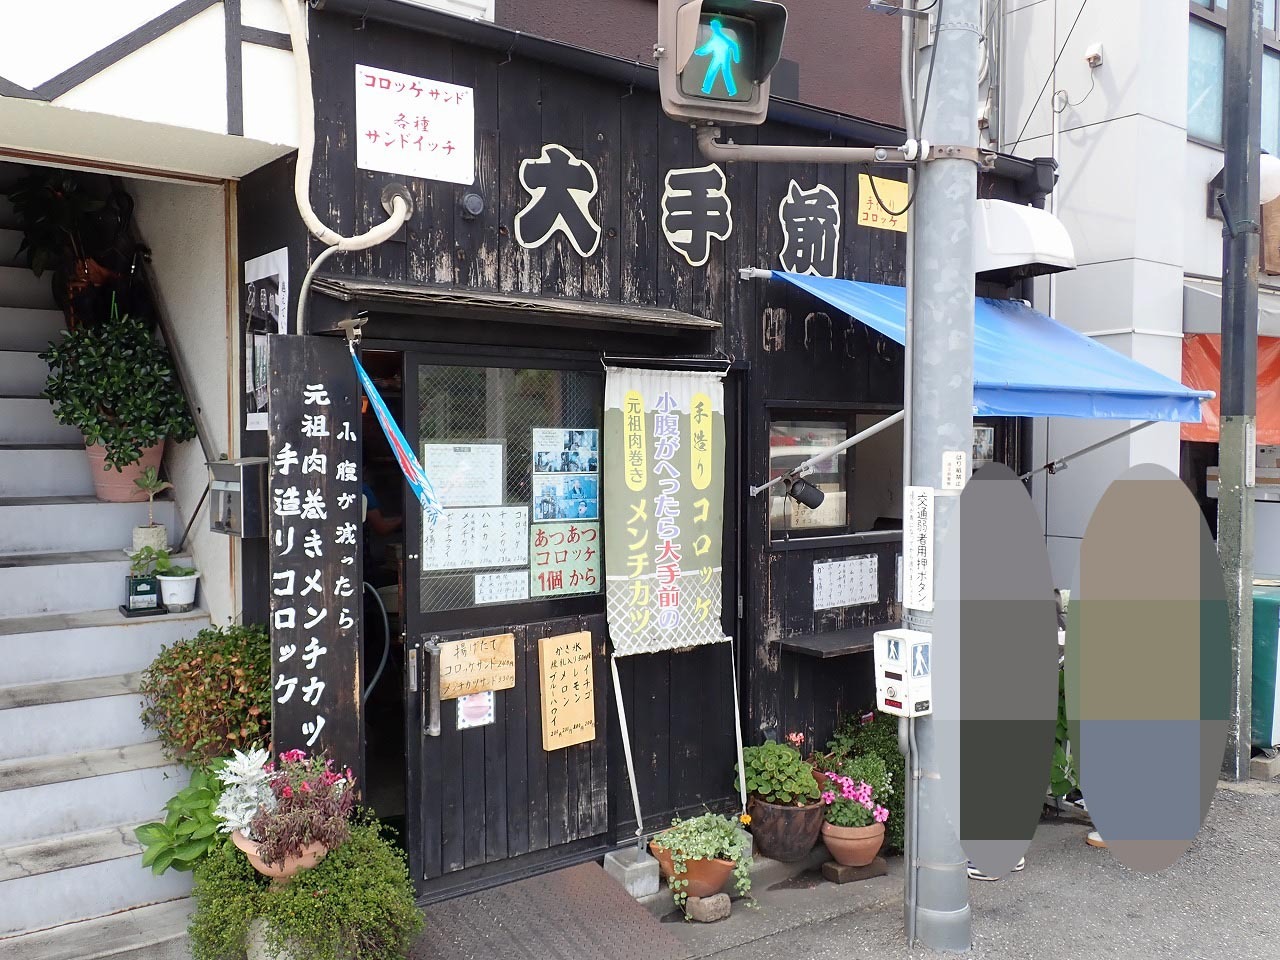 お店は川越市役所のすぐ近くにあります。西武新宿線・本川越駅から徒歩約18分です